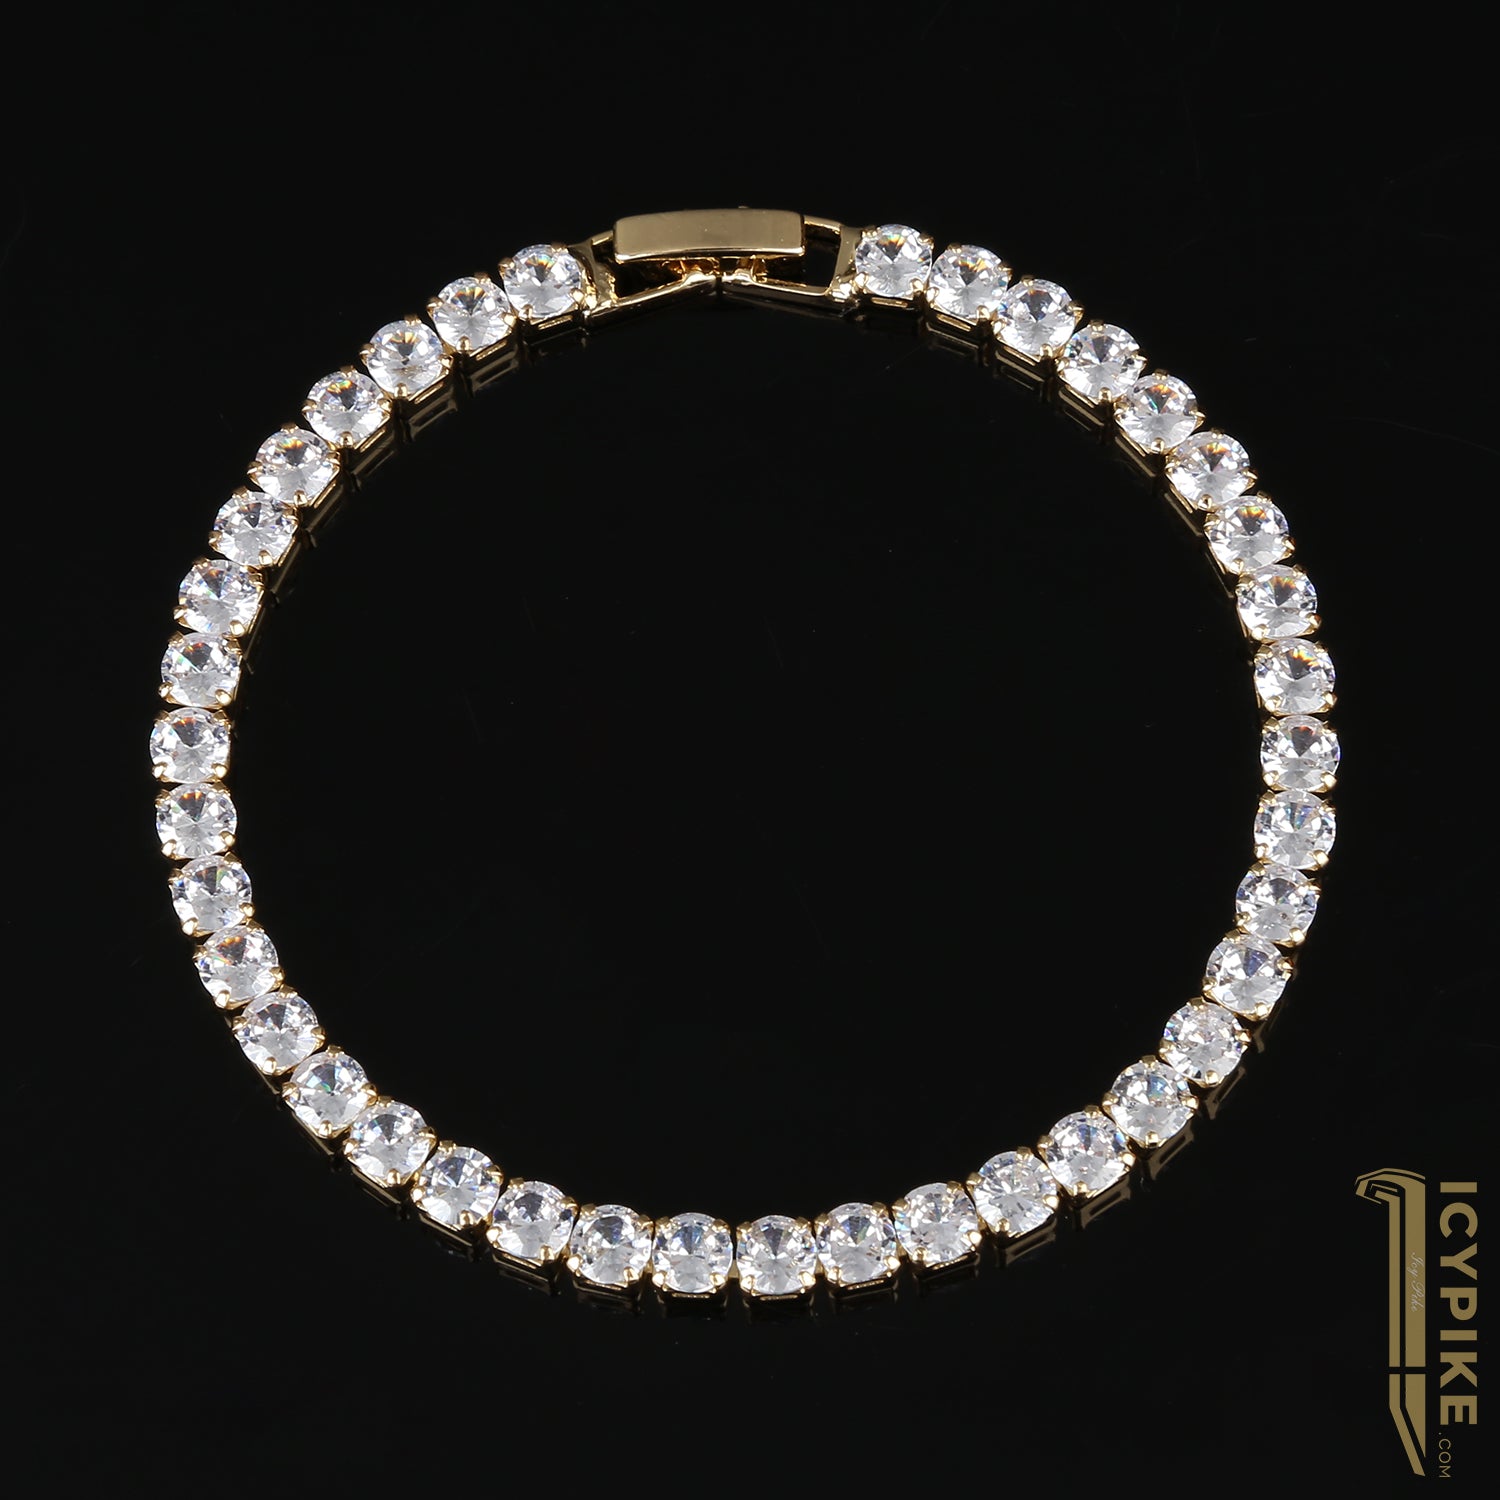 4mm Gold Plated Tennis Bracelet - {{ cuban link}} Bracelet